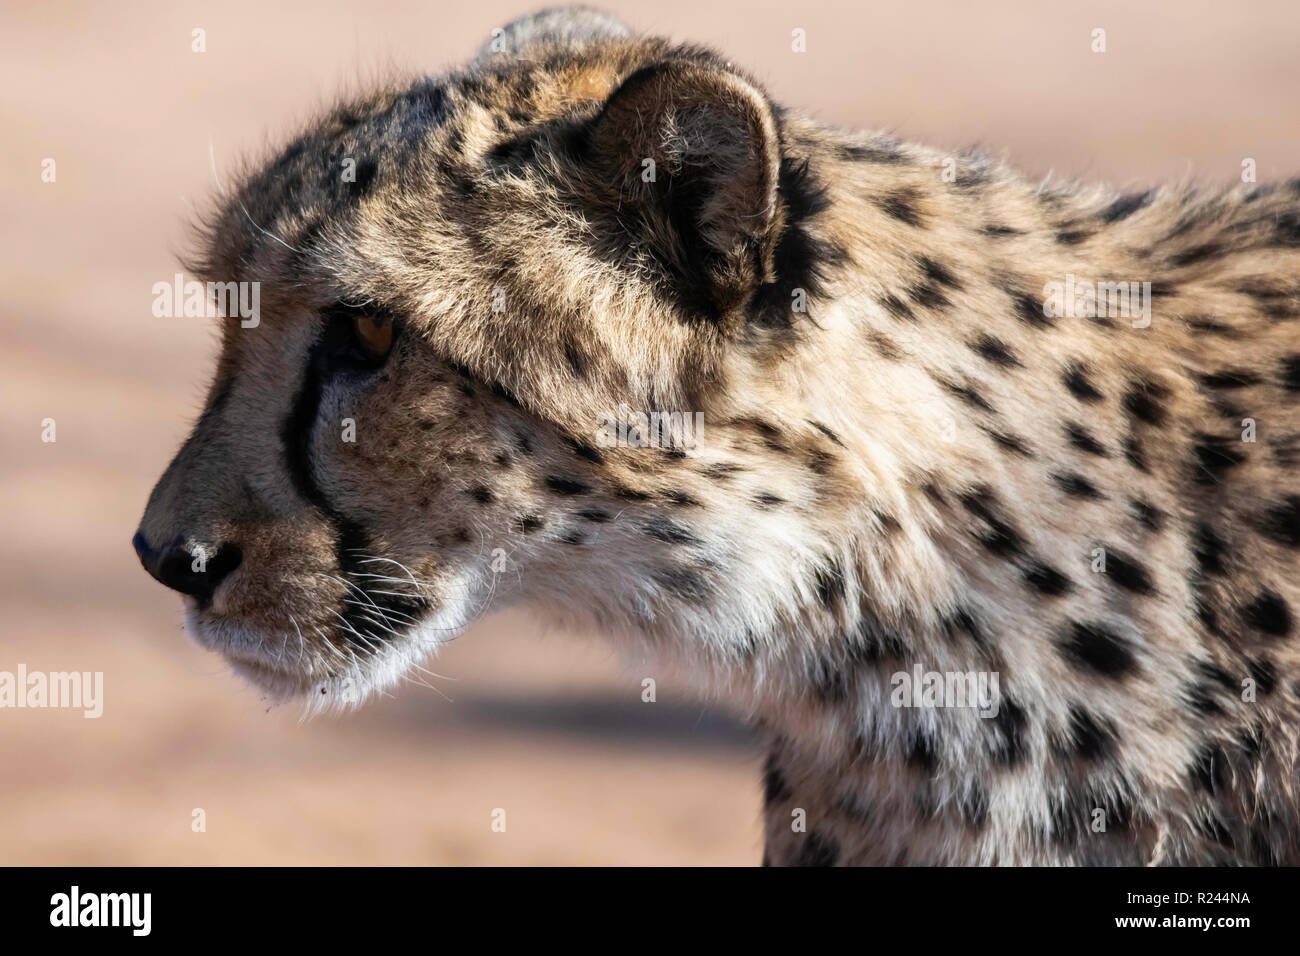 Im südlichen Afrika gepard fotografiert in Namibia. Stockfoto